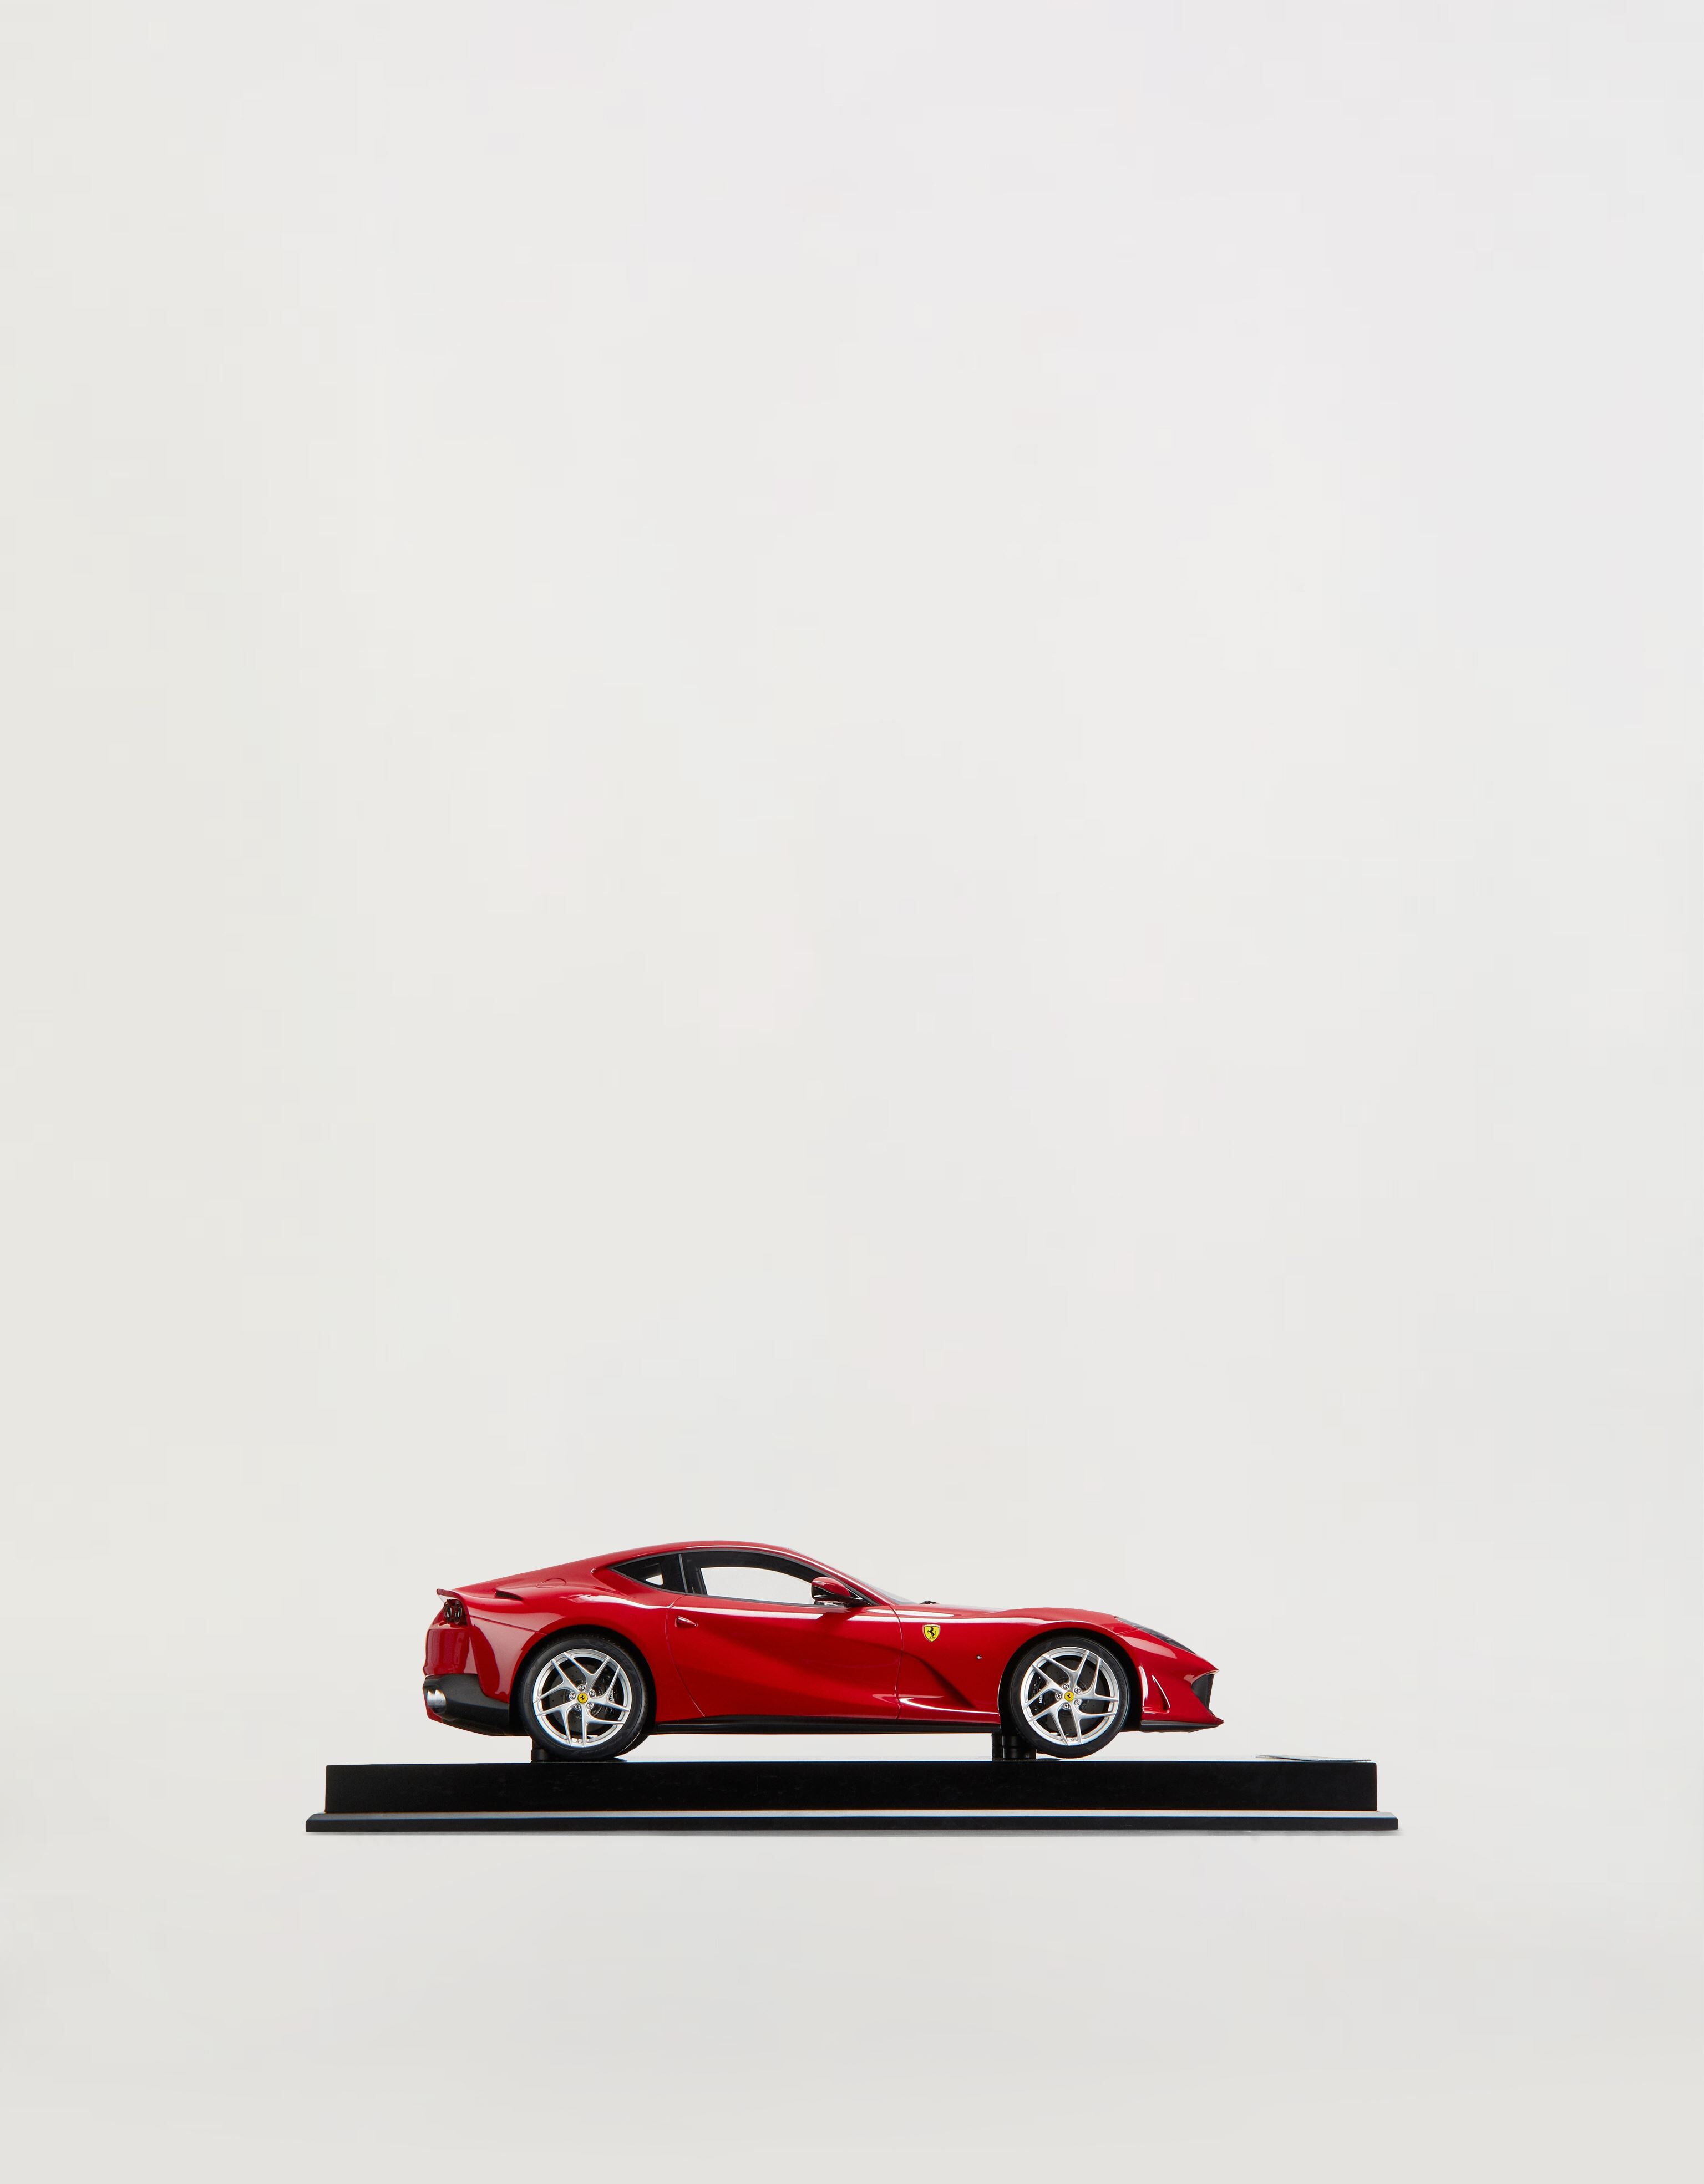 Ferrari 法拉利 812 Superfast 1:12 模型车 红色 F0071f